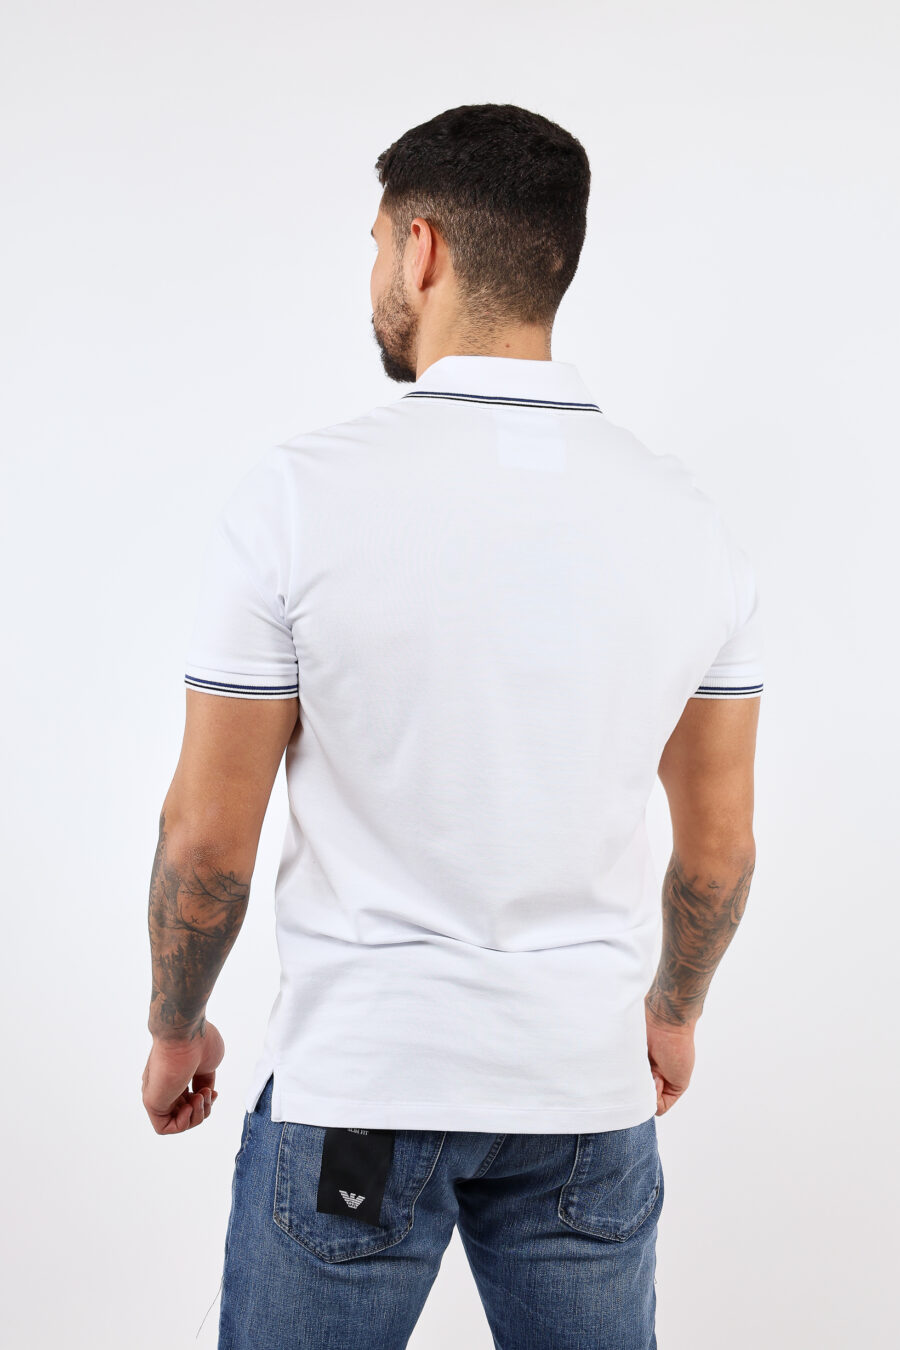 Weißes gestricktes Poloshirt mit gestreiftem Kragen und Adler-Mini-Logo - BLS Fashion 5